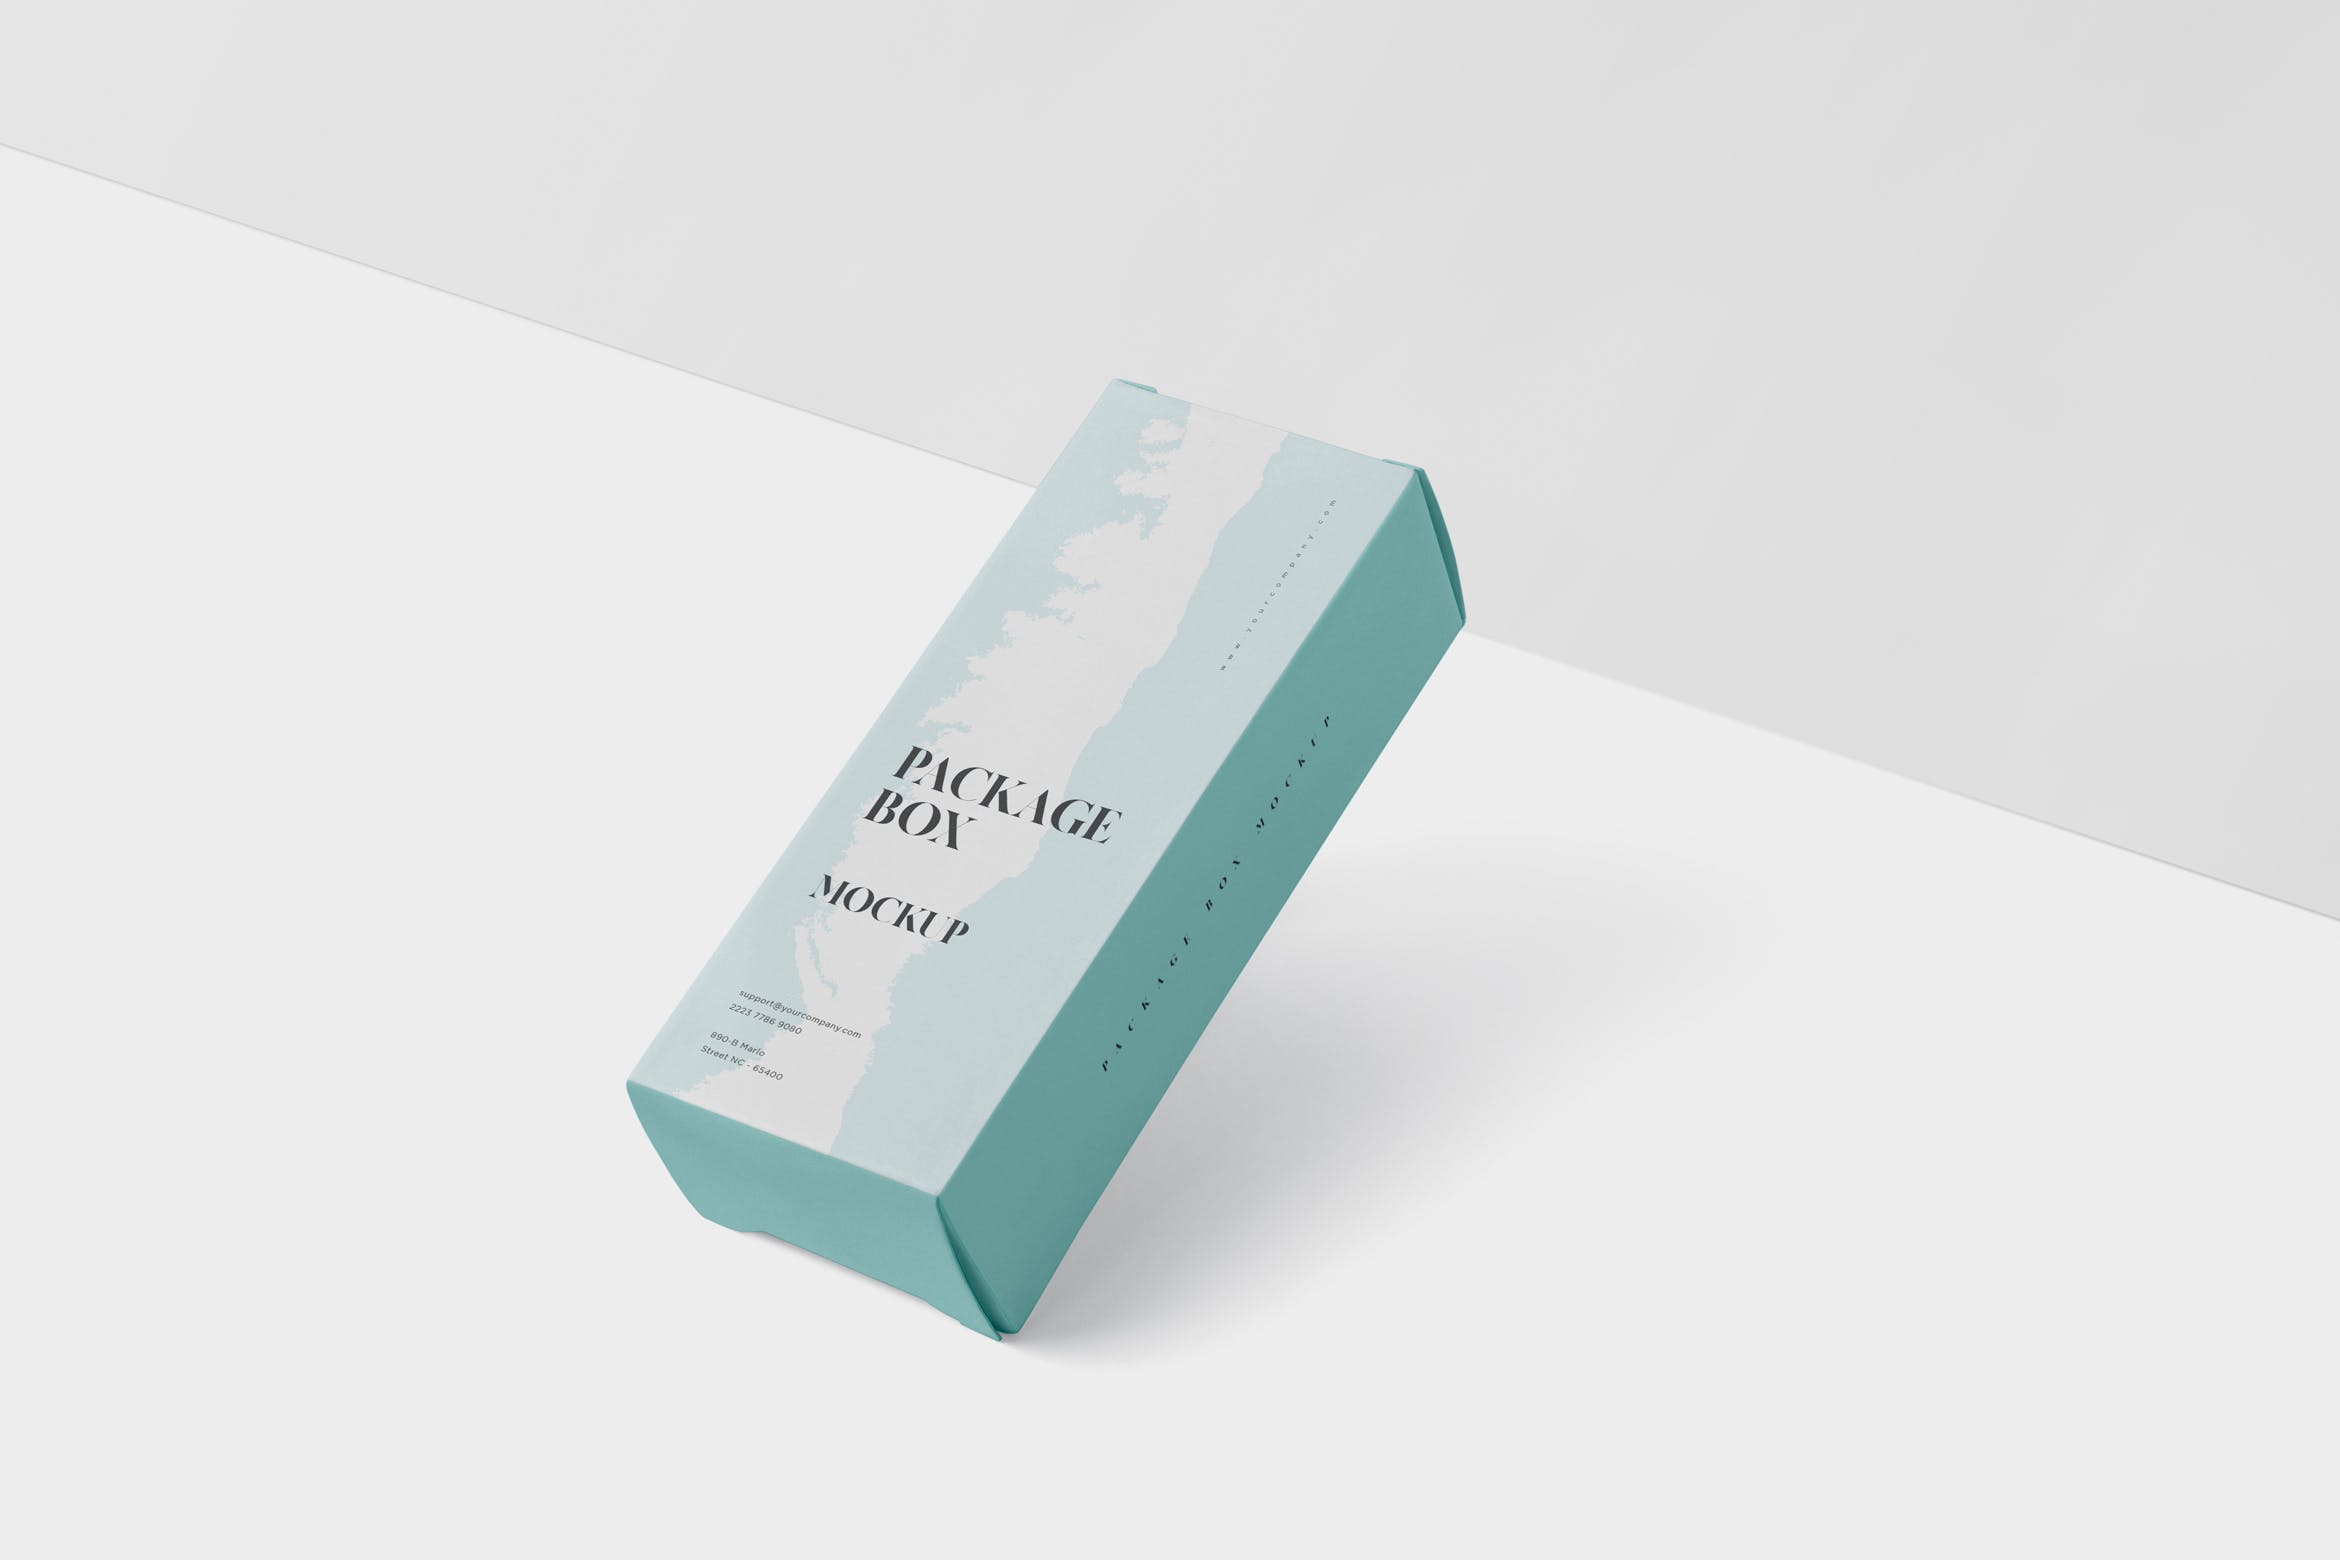 简约风多用途产品包装纸盒设计效果图蚂蚁素材精选 Package Box Mock-Up – High Rectangle Shape插图